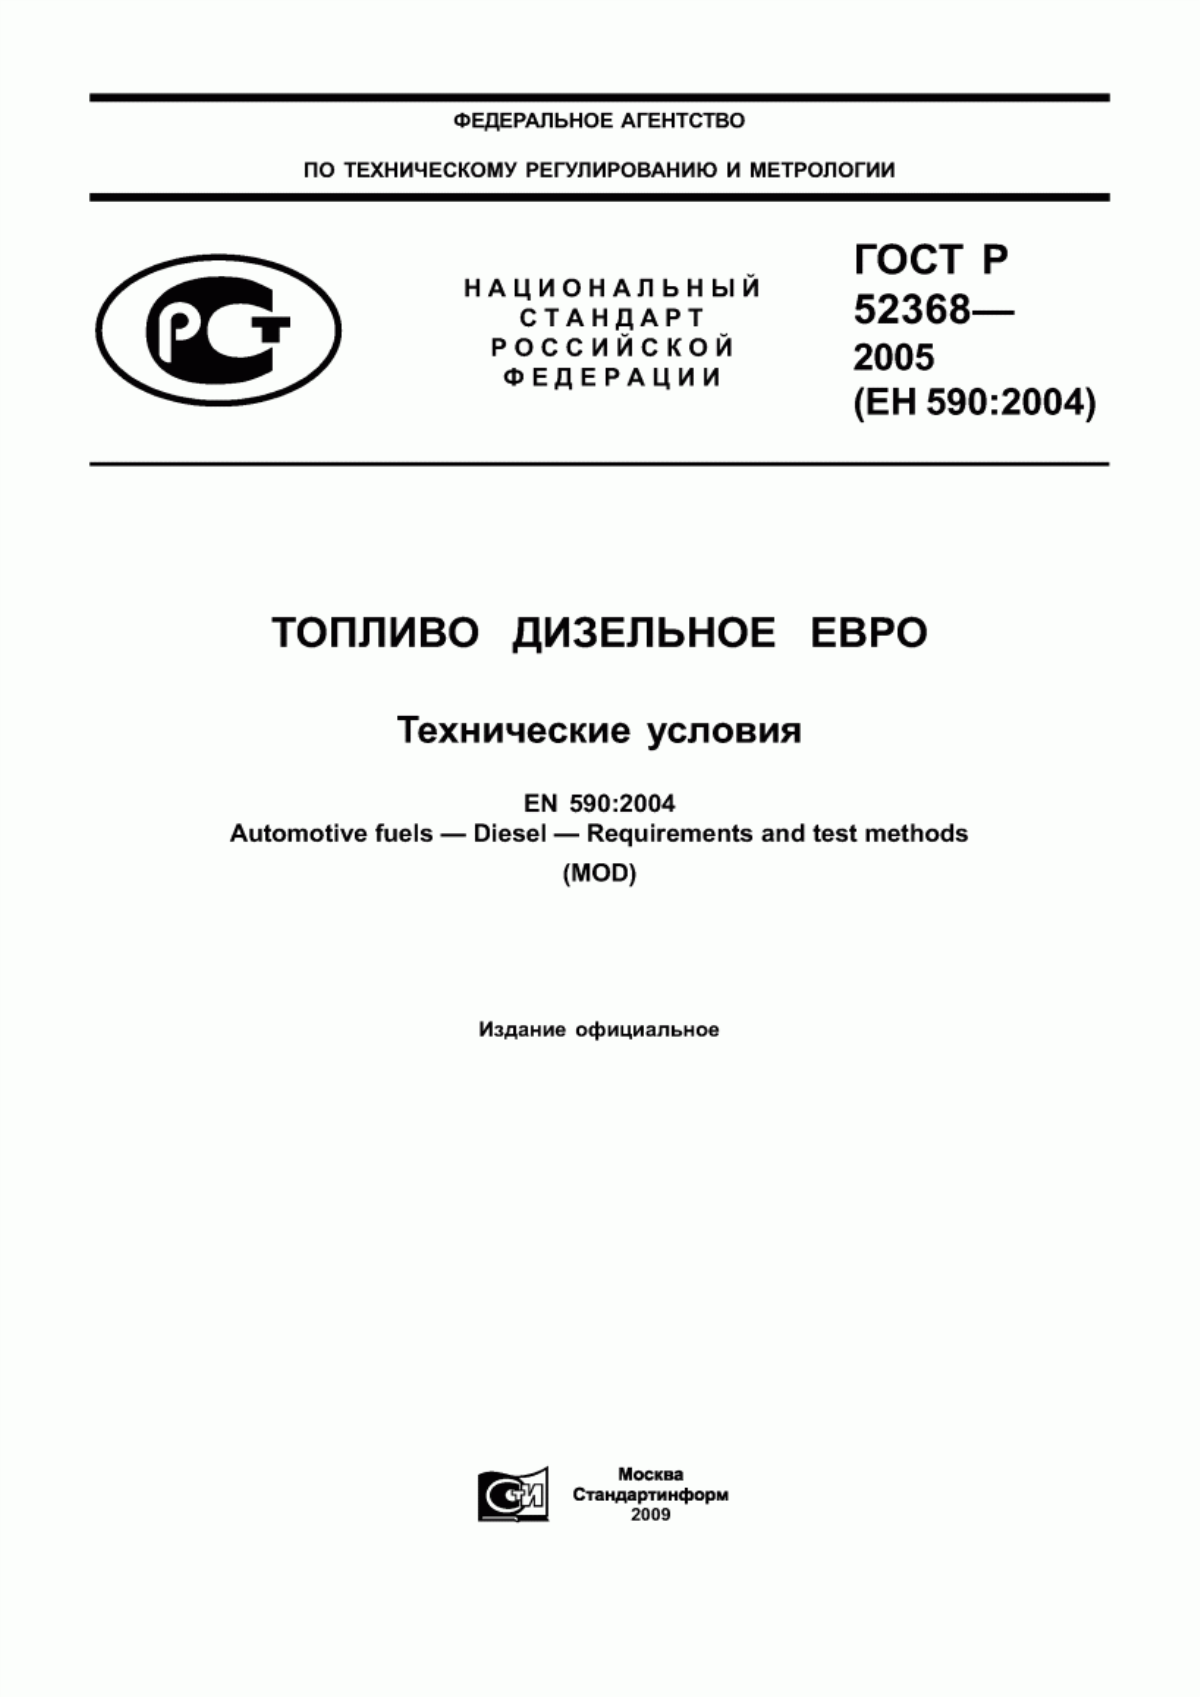 ГОСТ Р 52368-2005 Топливо дизельное ЕВРО. Технические условия